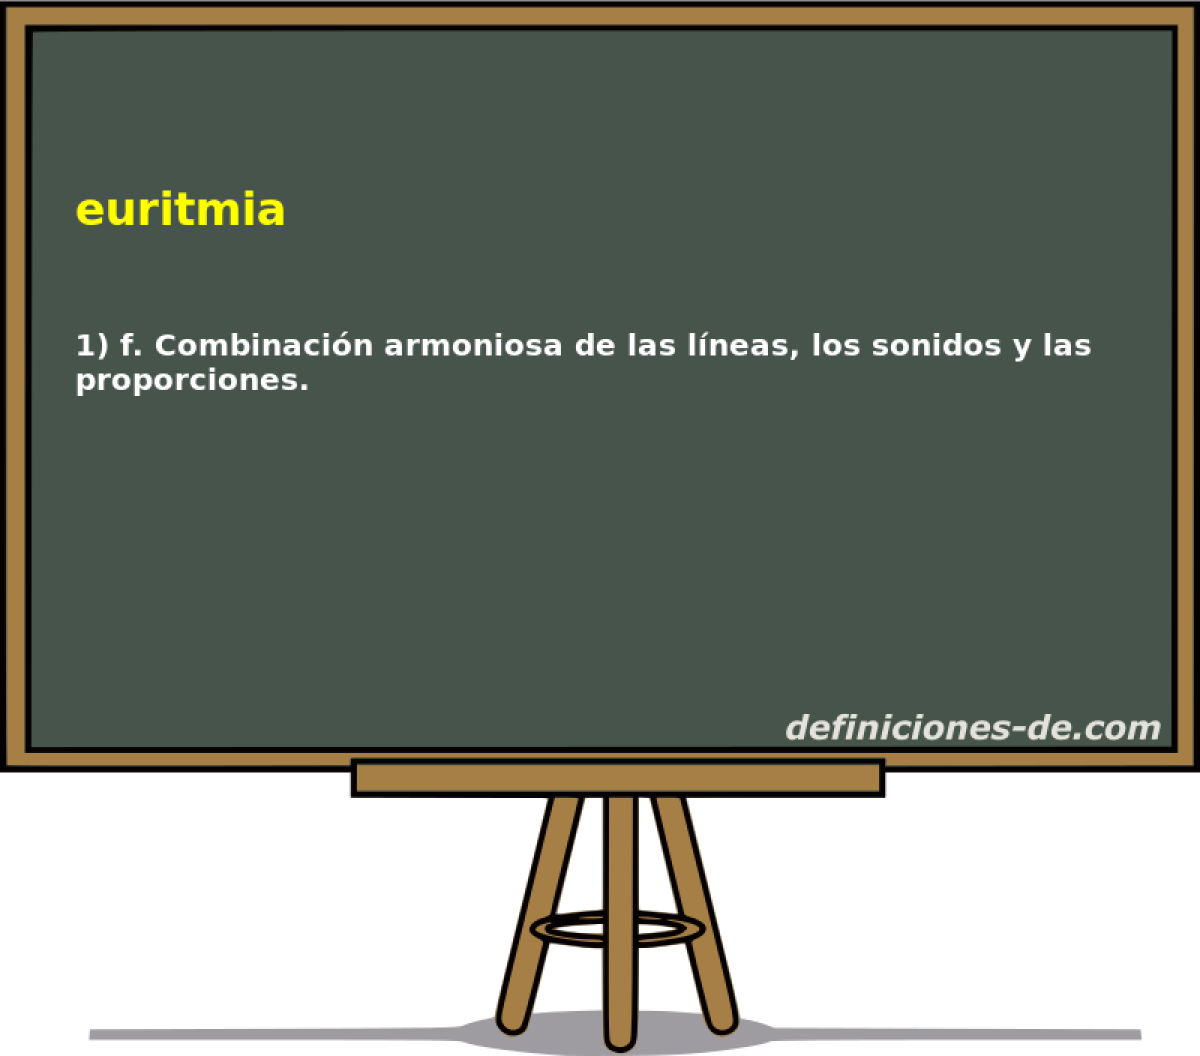 euritmia 